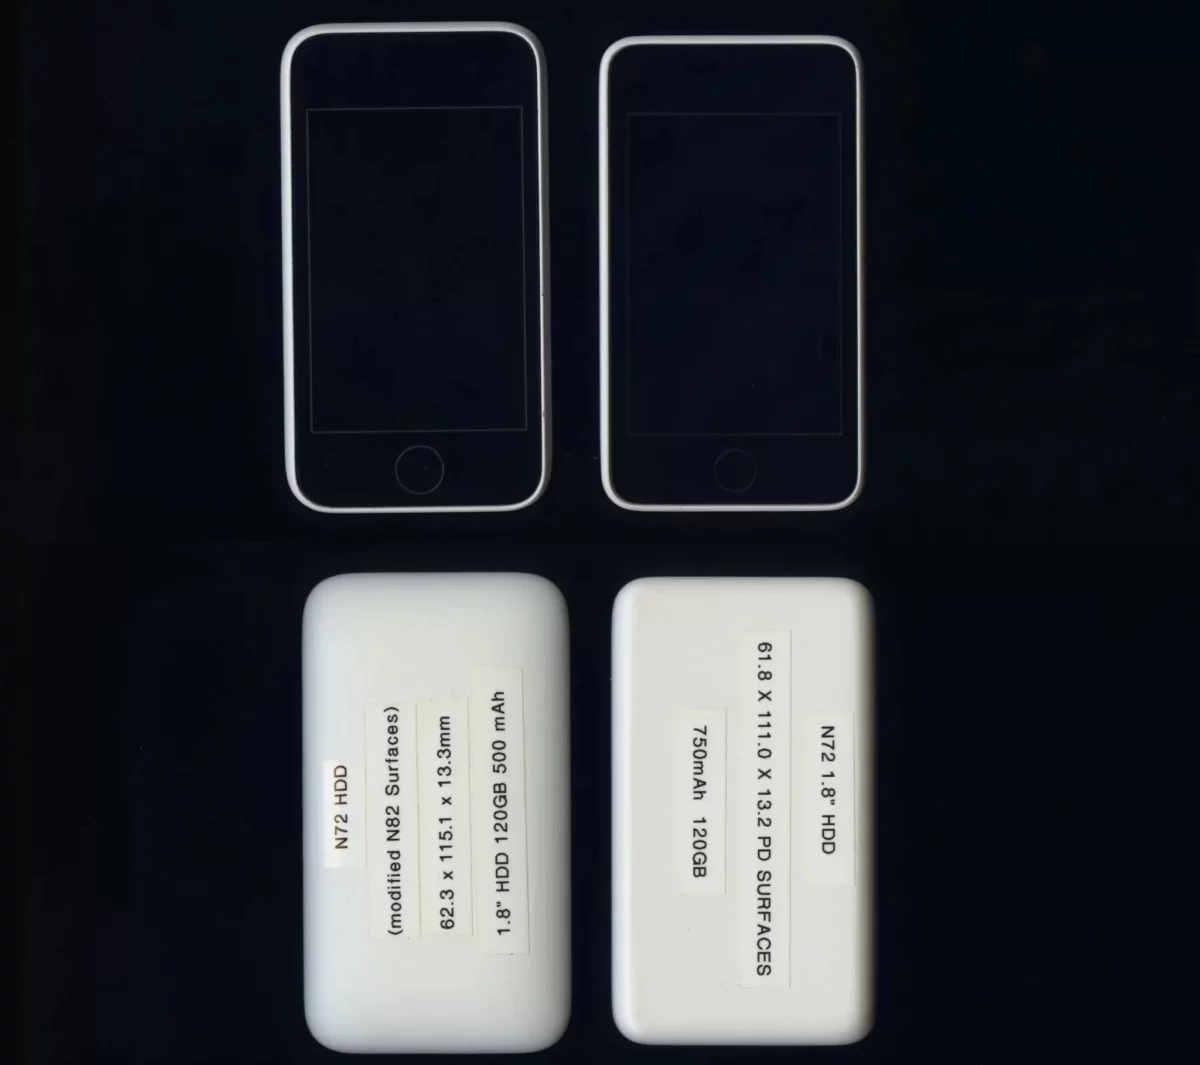 iPod с кнопками для набора номера: так выглядел один из прототипов первого iPhone